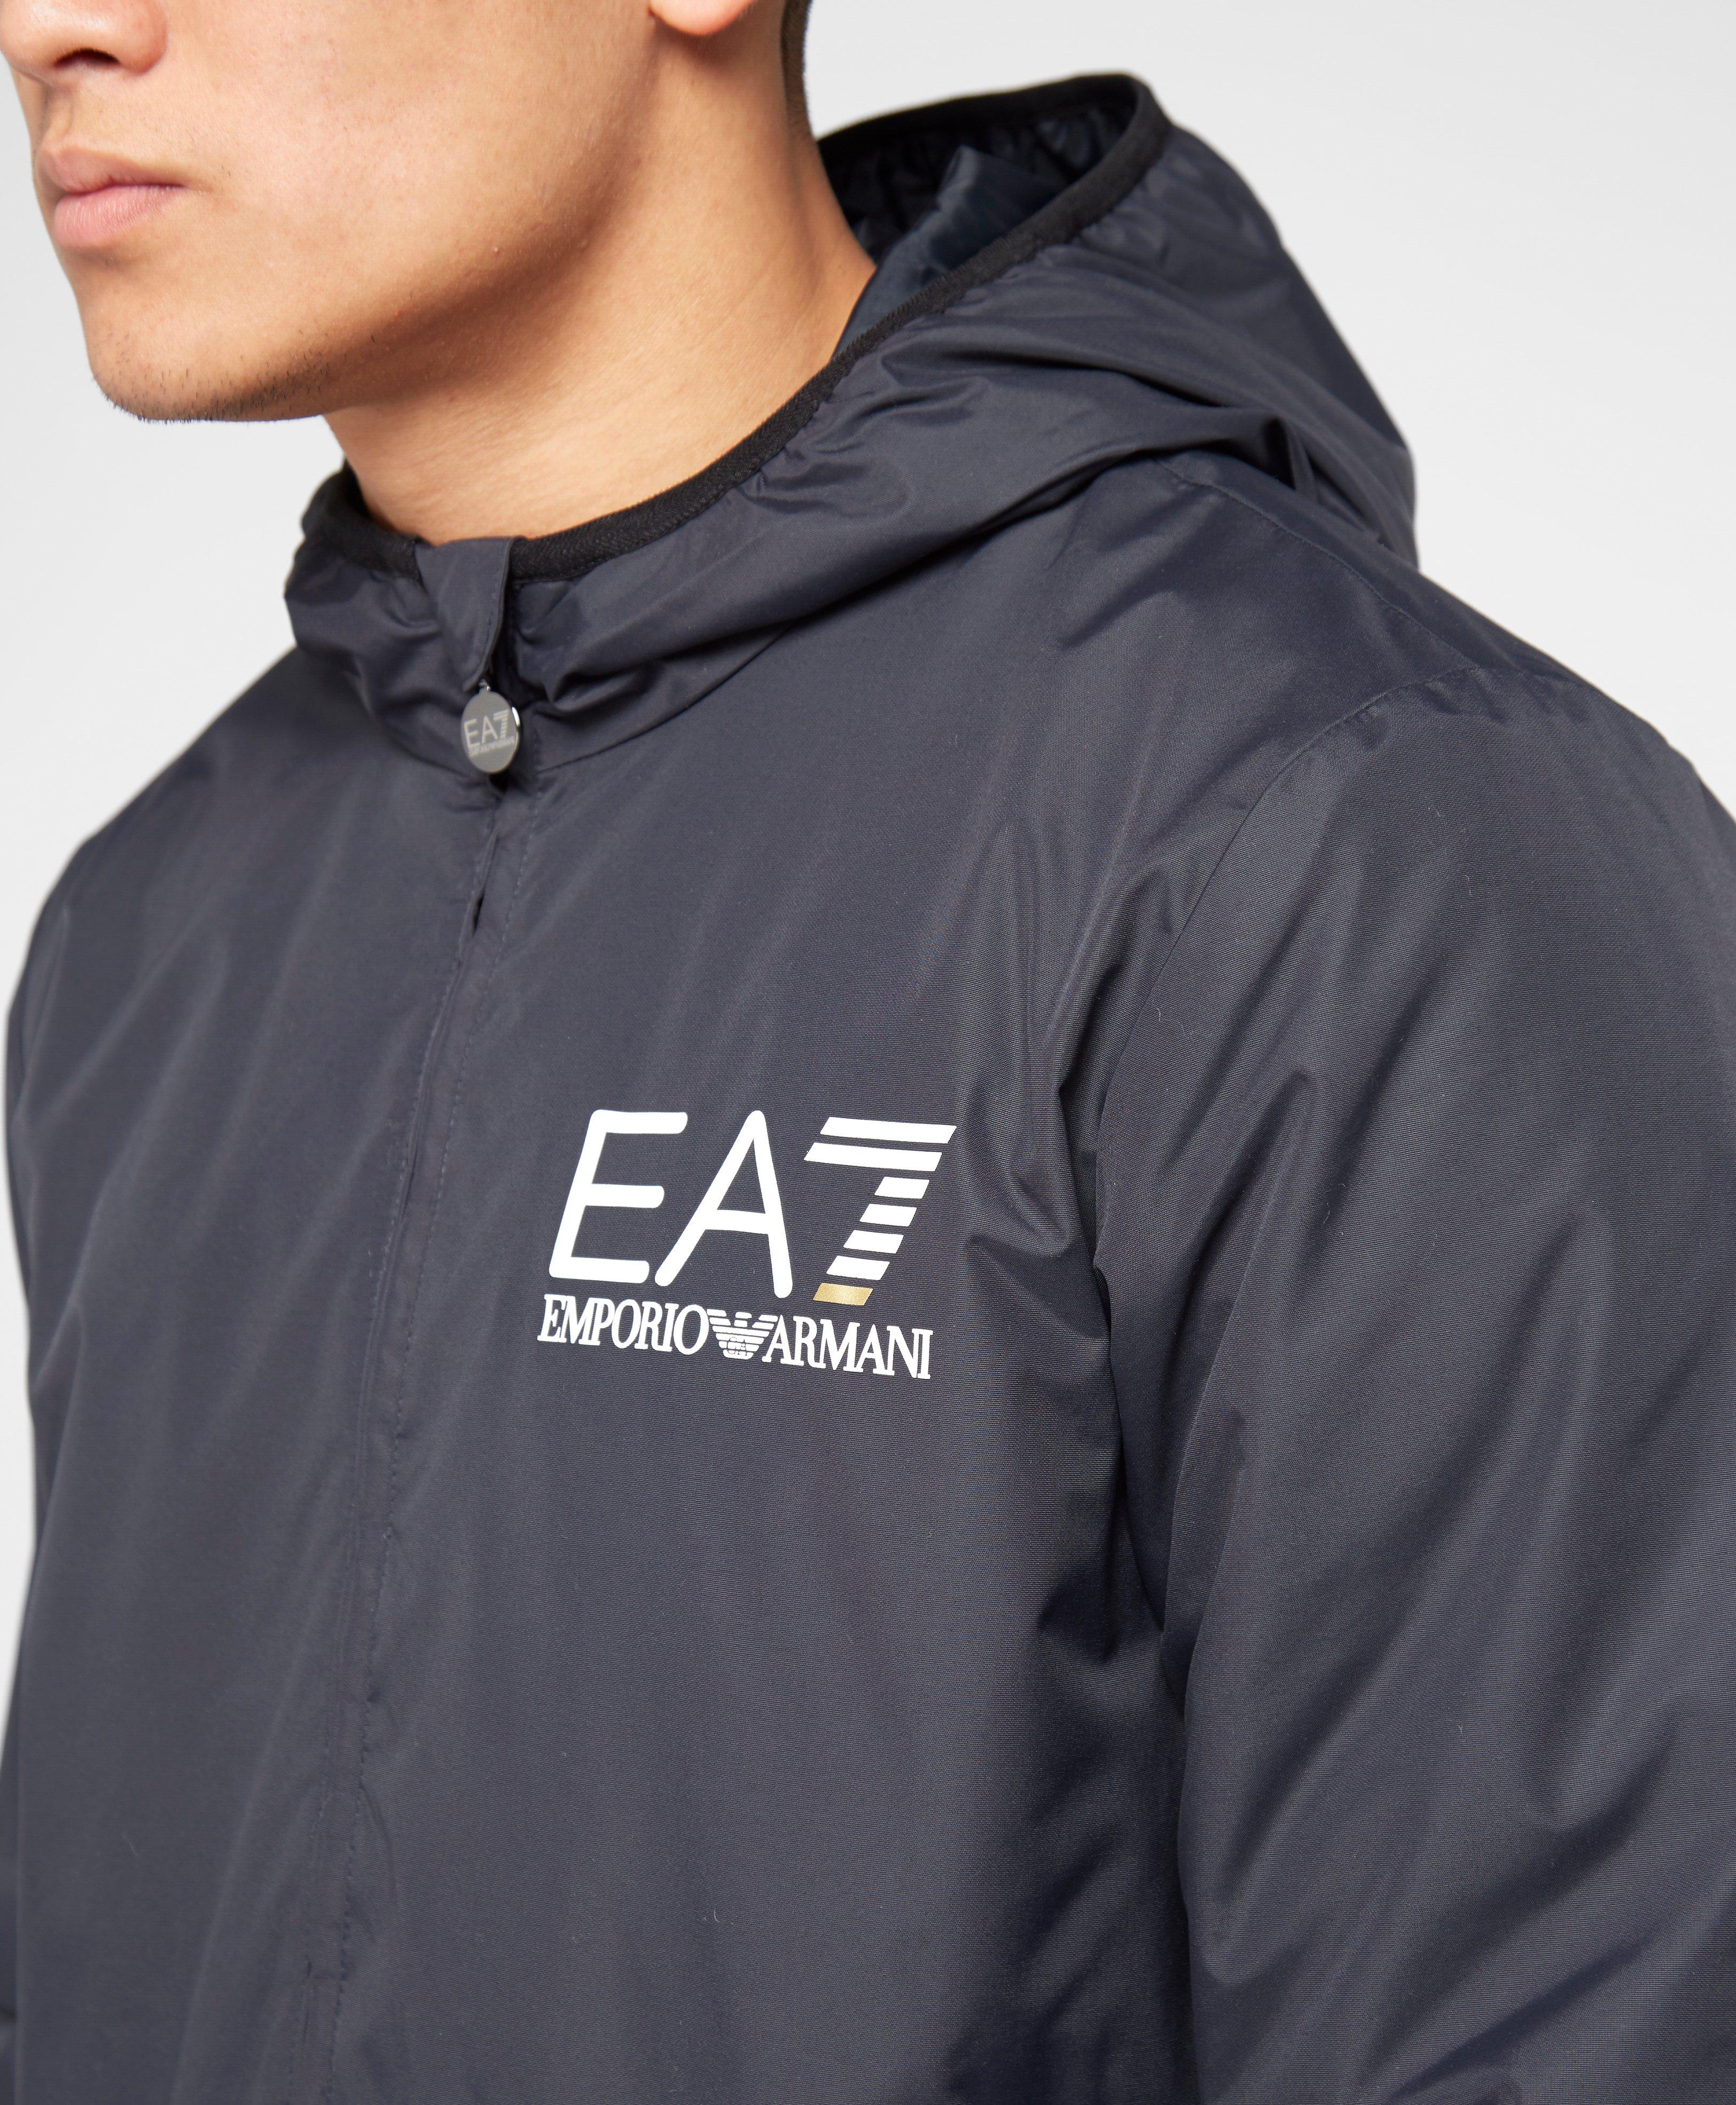 ea7 sailing jacket